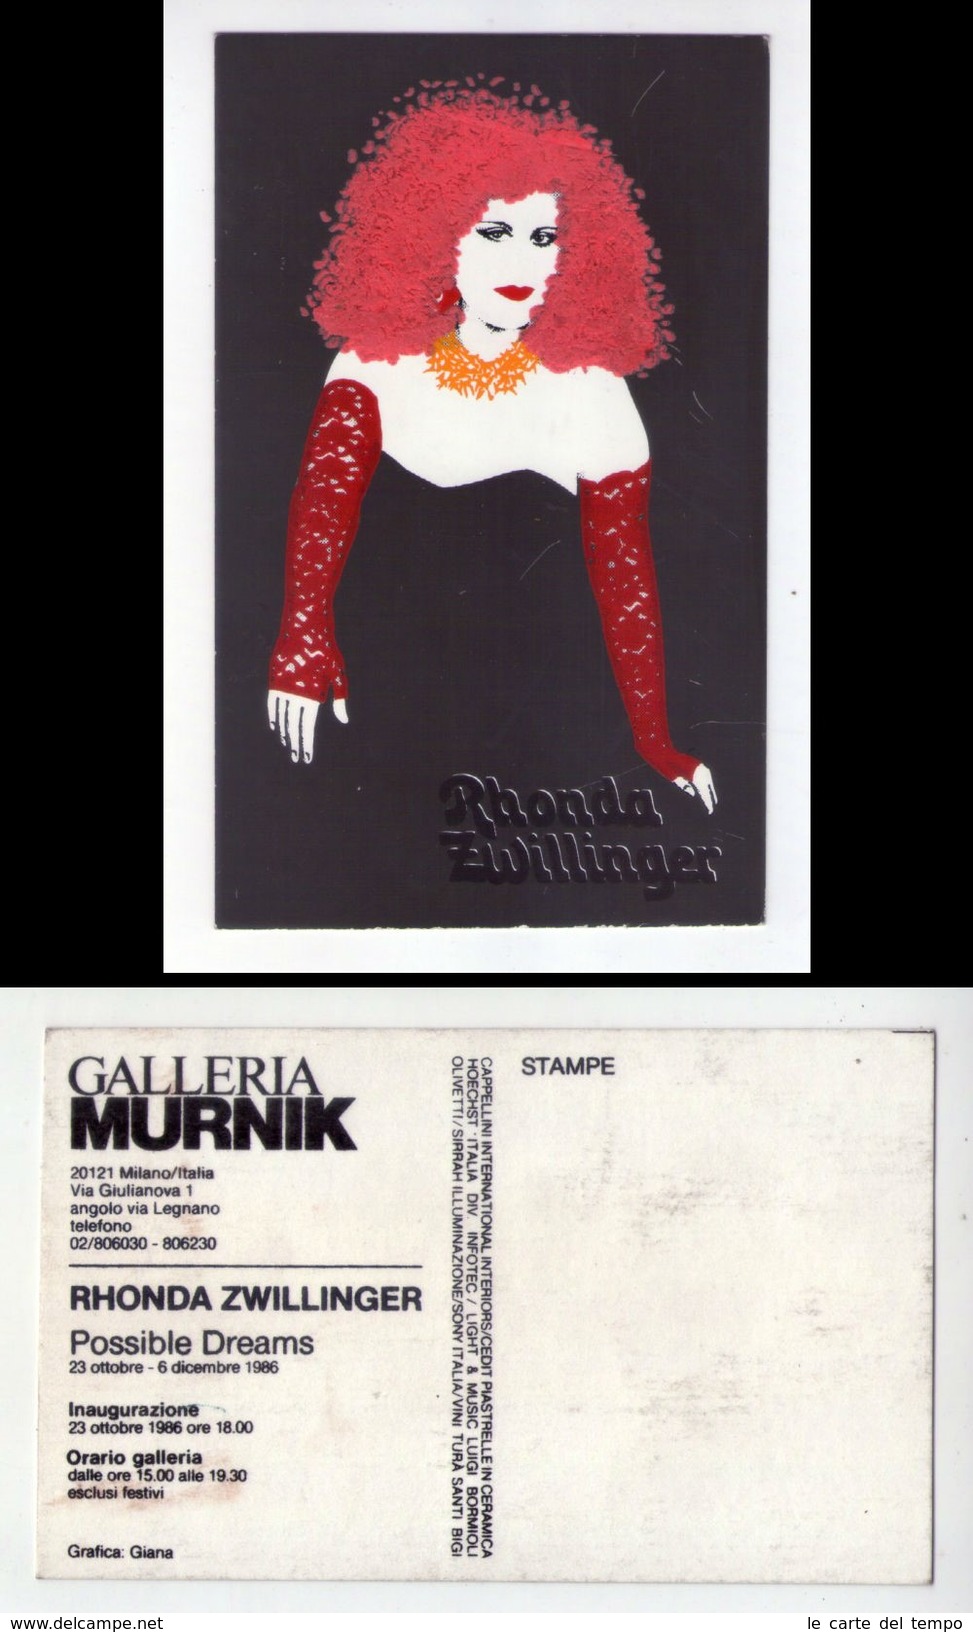 Cartolina Serigrafica Con Applicazioni. RHONDA ZWILLINGER "Possible Dreams" Inaugurazione 1986 - Inwijdingen